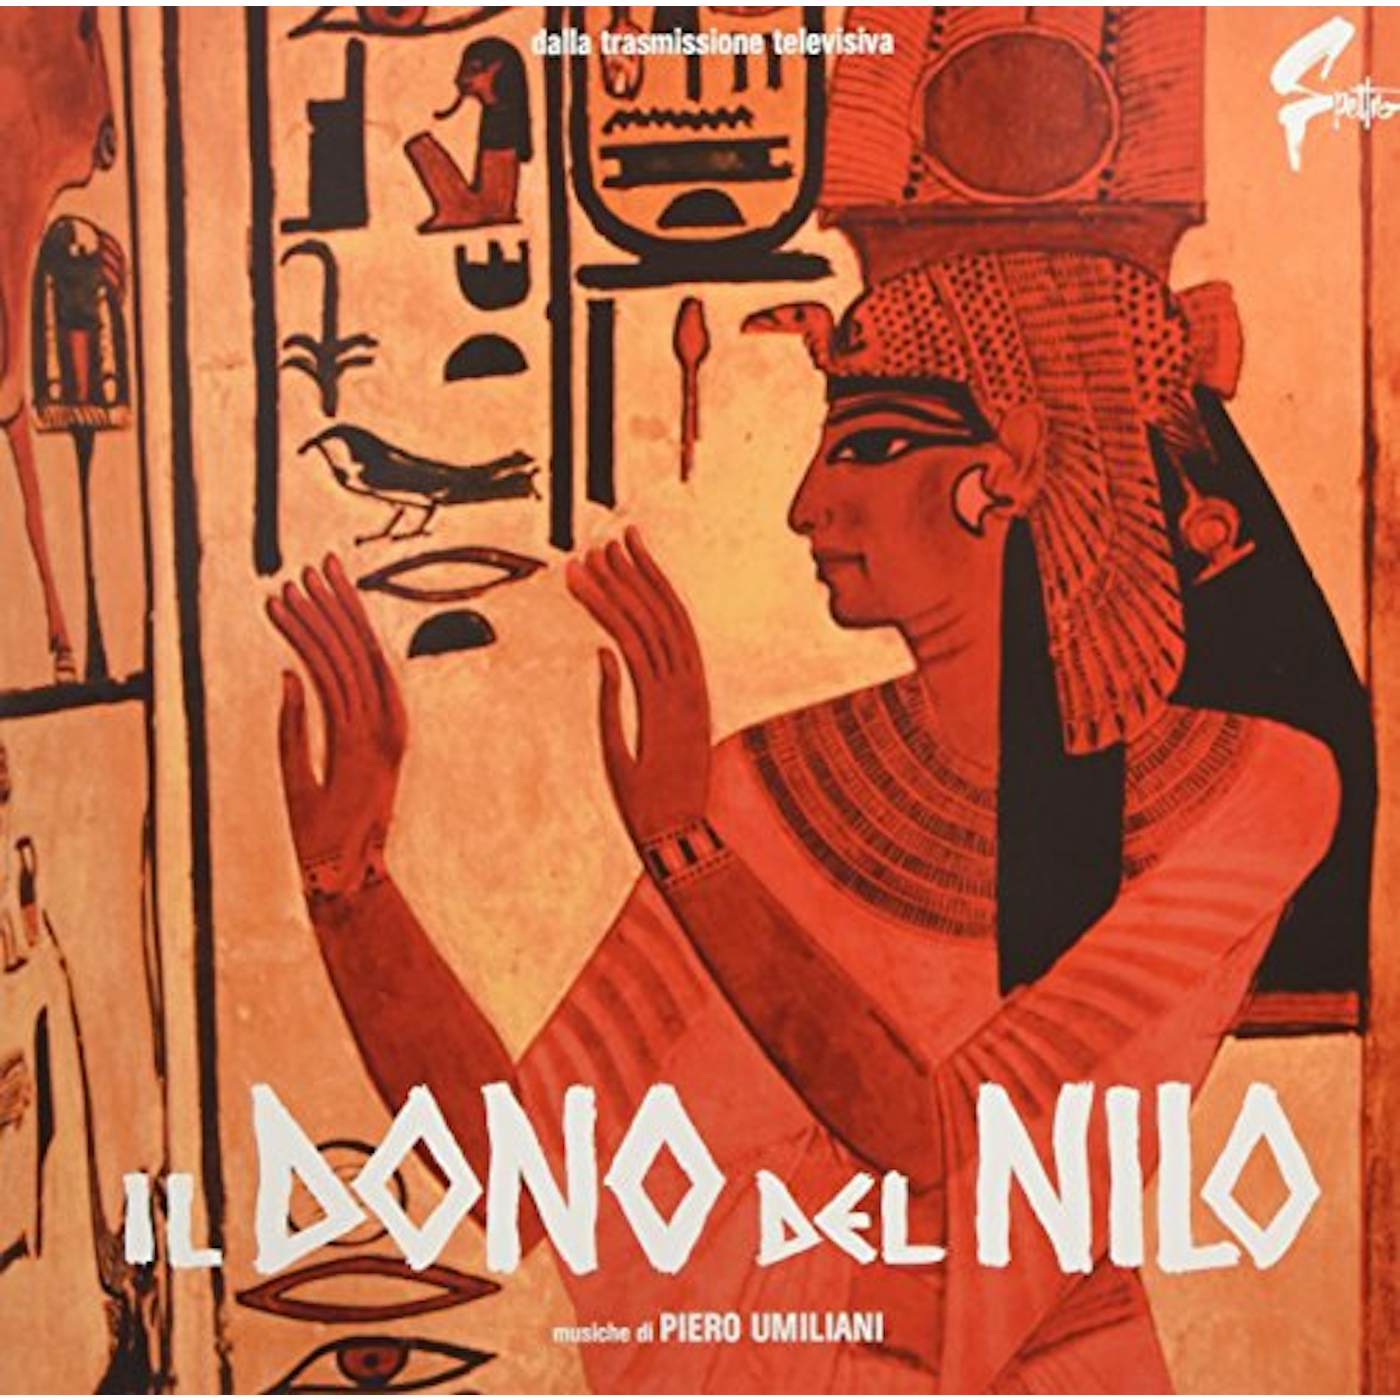 Piero Umiliani IL DONO DEL NILO / Original Soundtrack Vinyl Record